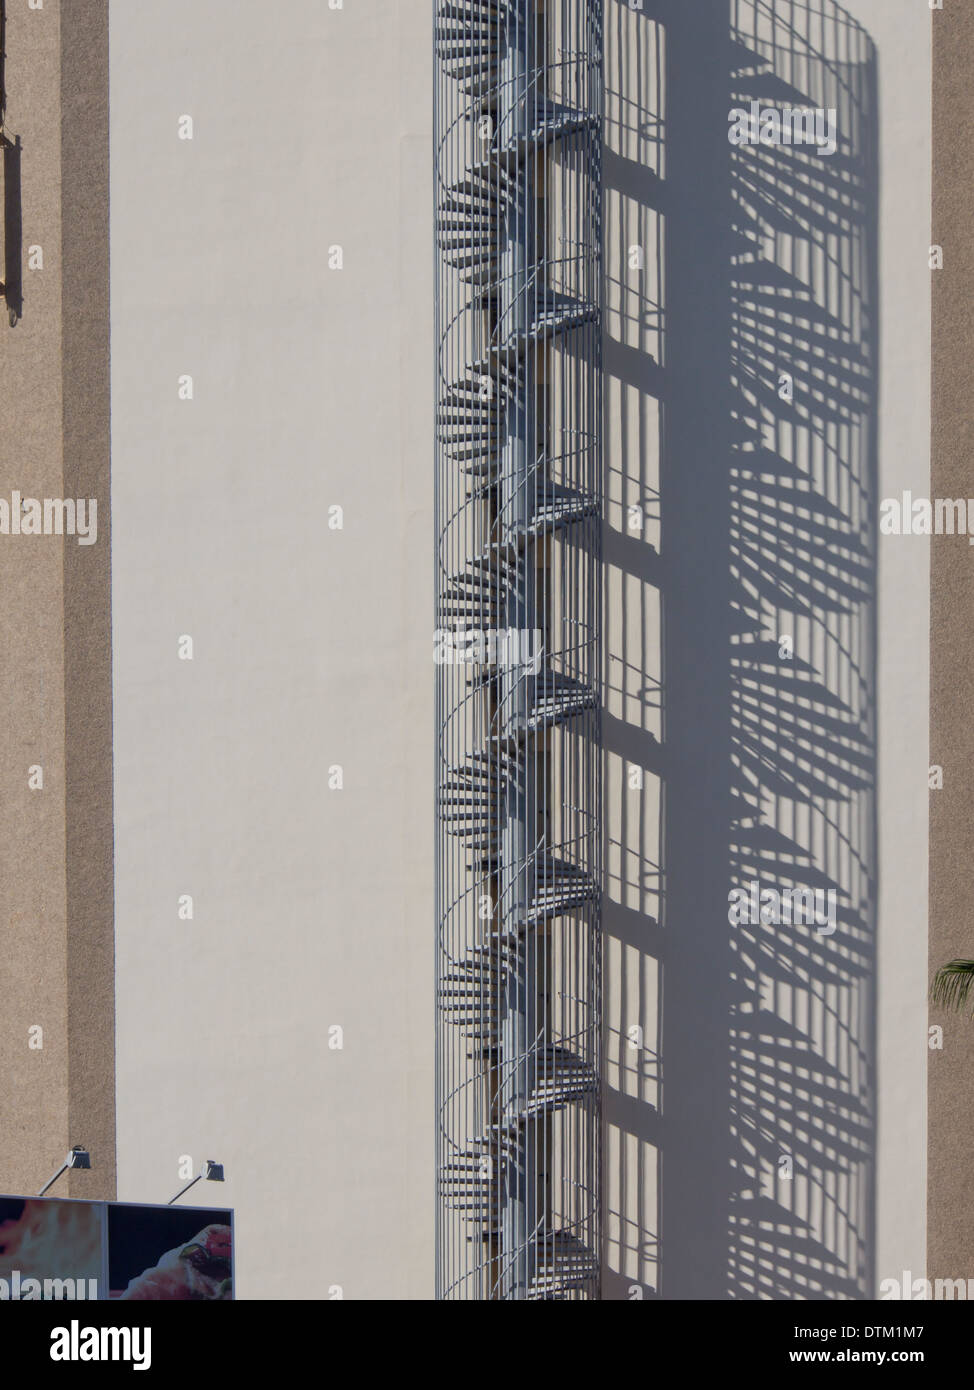 Escalier en spirale de sortie de secours et son ombre reflétée sur un immeuble situé à Playa Las Americas Tenerife Espagne Banque D'Images